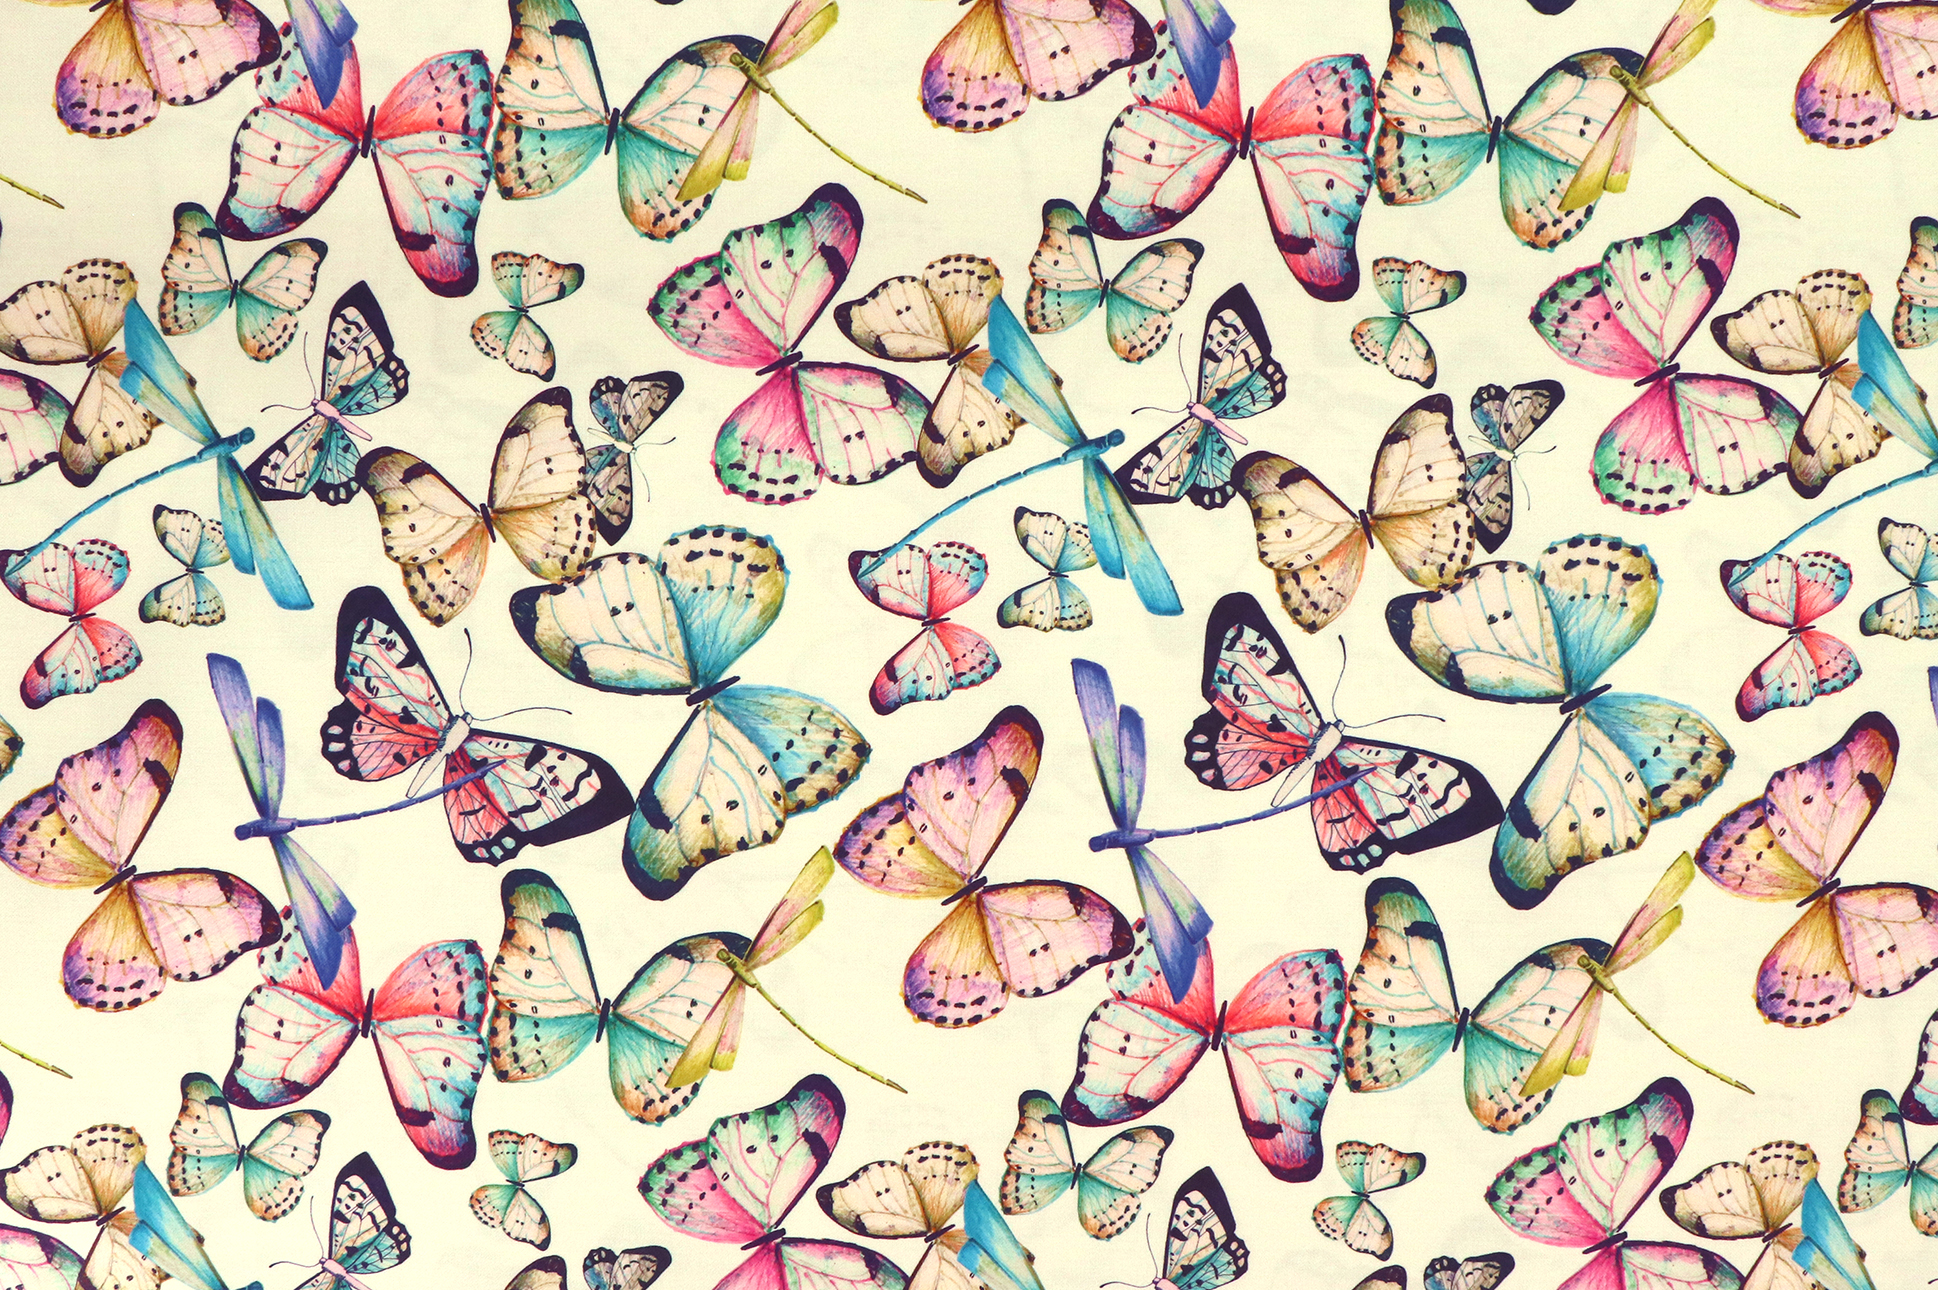 Tessuto da decorazione, dralon esterno, farfalle e libellule colorate